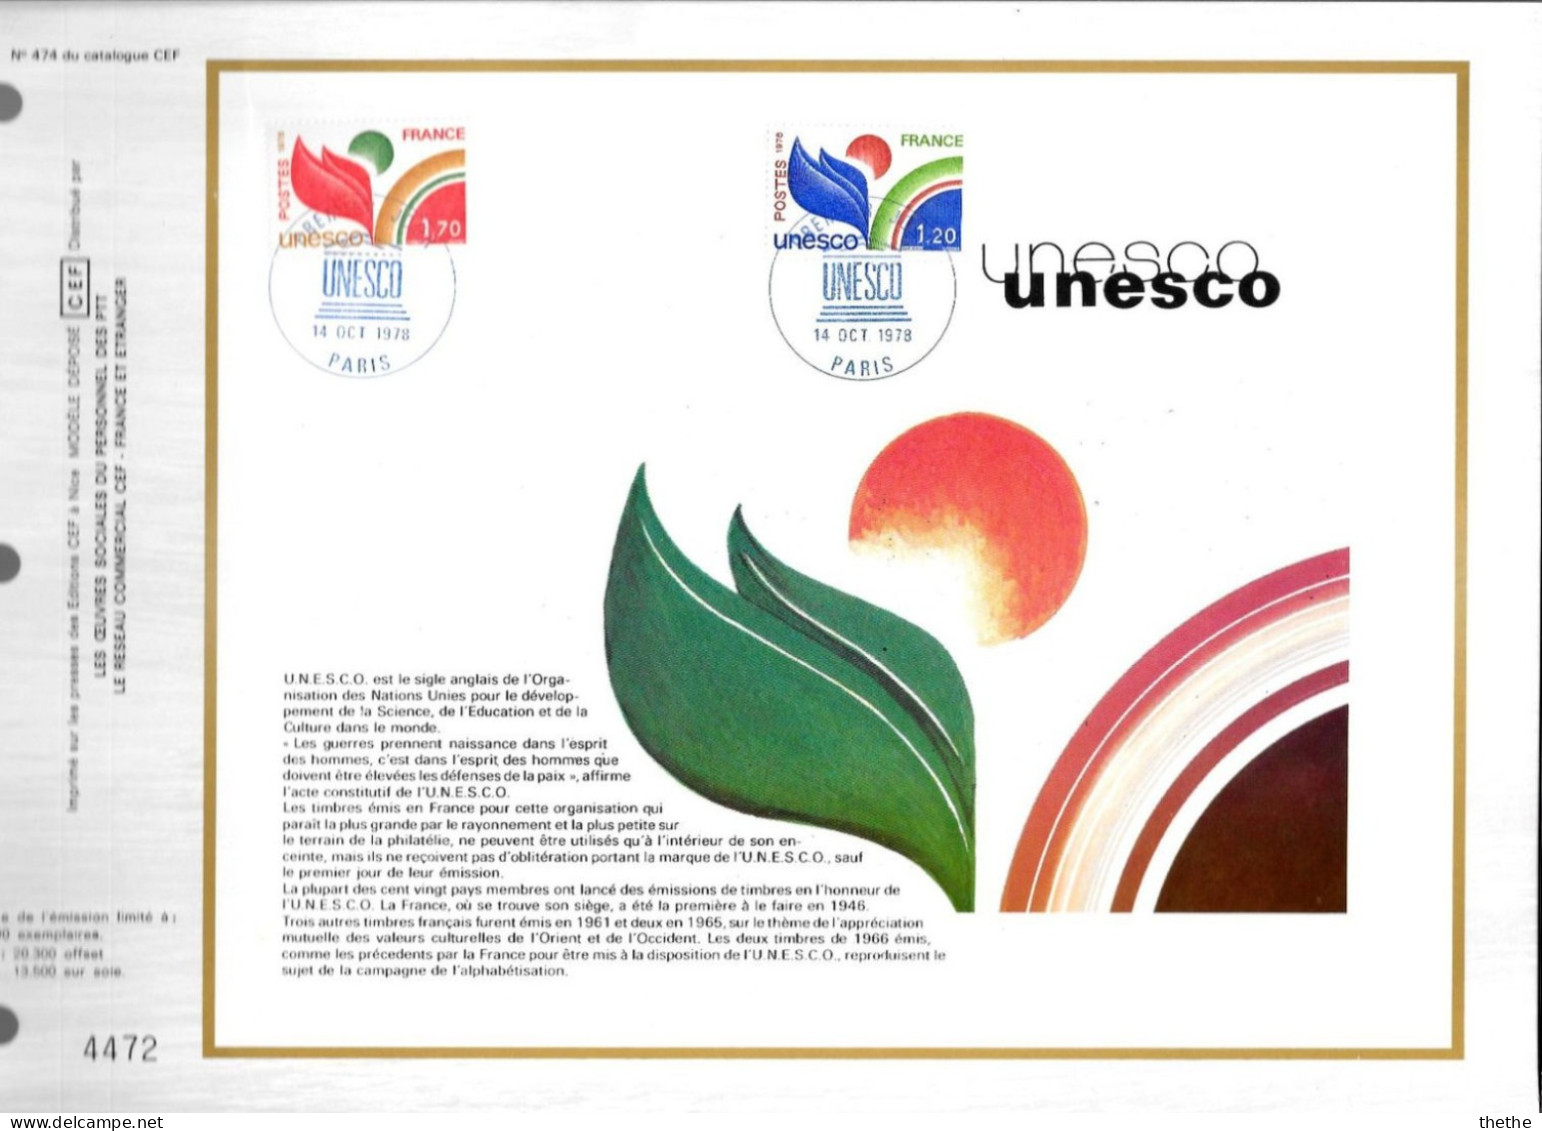 FRANCE - UNESCO - N° 474 Du Catalogue CEF - 1970-1979